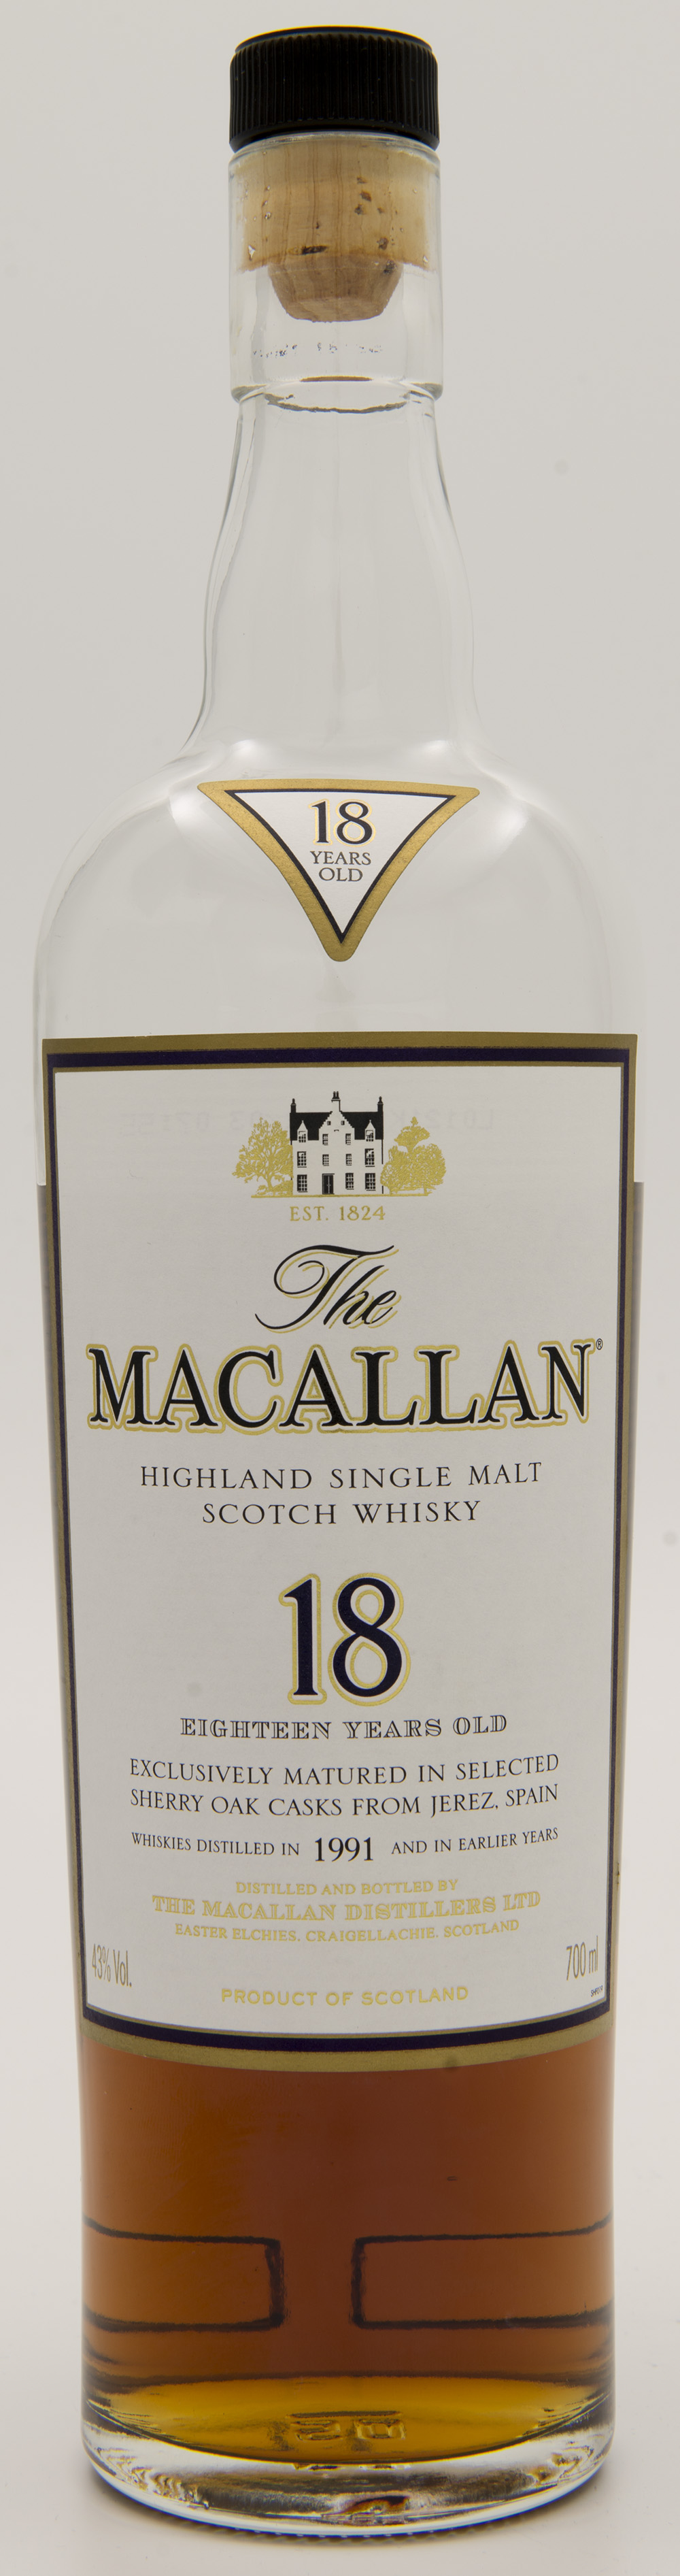 Billede: DSC_3683 - The MacAllan 18 - 1991 - bottle front.jpg